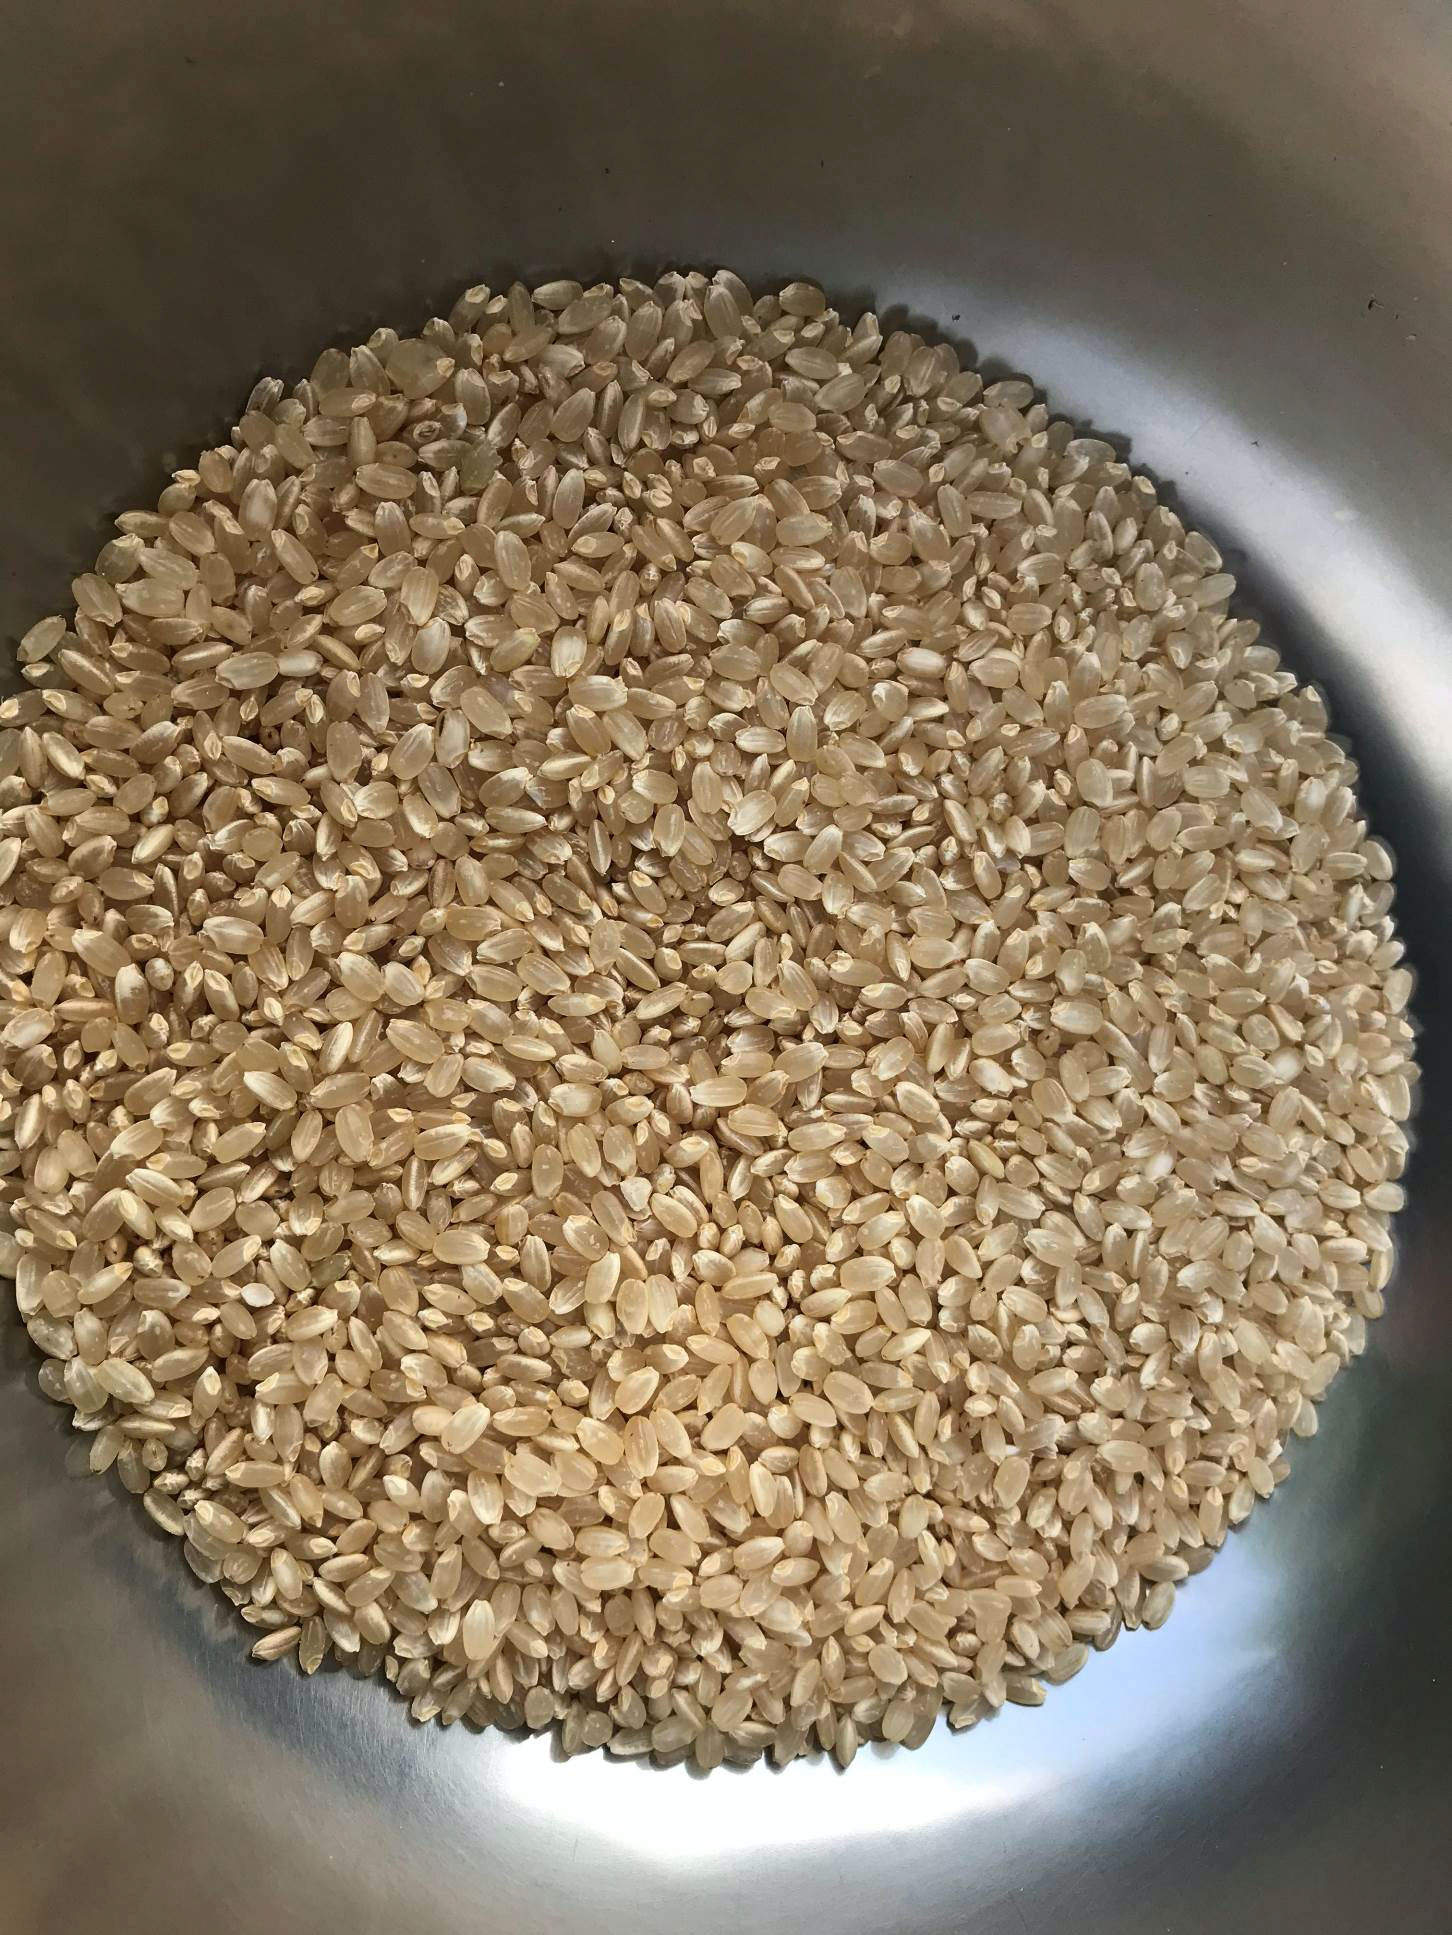 くず米 くず玄米 20kg 鳥のエサ 青米 飼料用米 R4年産コシヒカリ100%